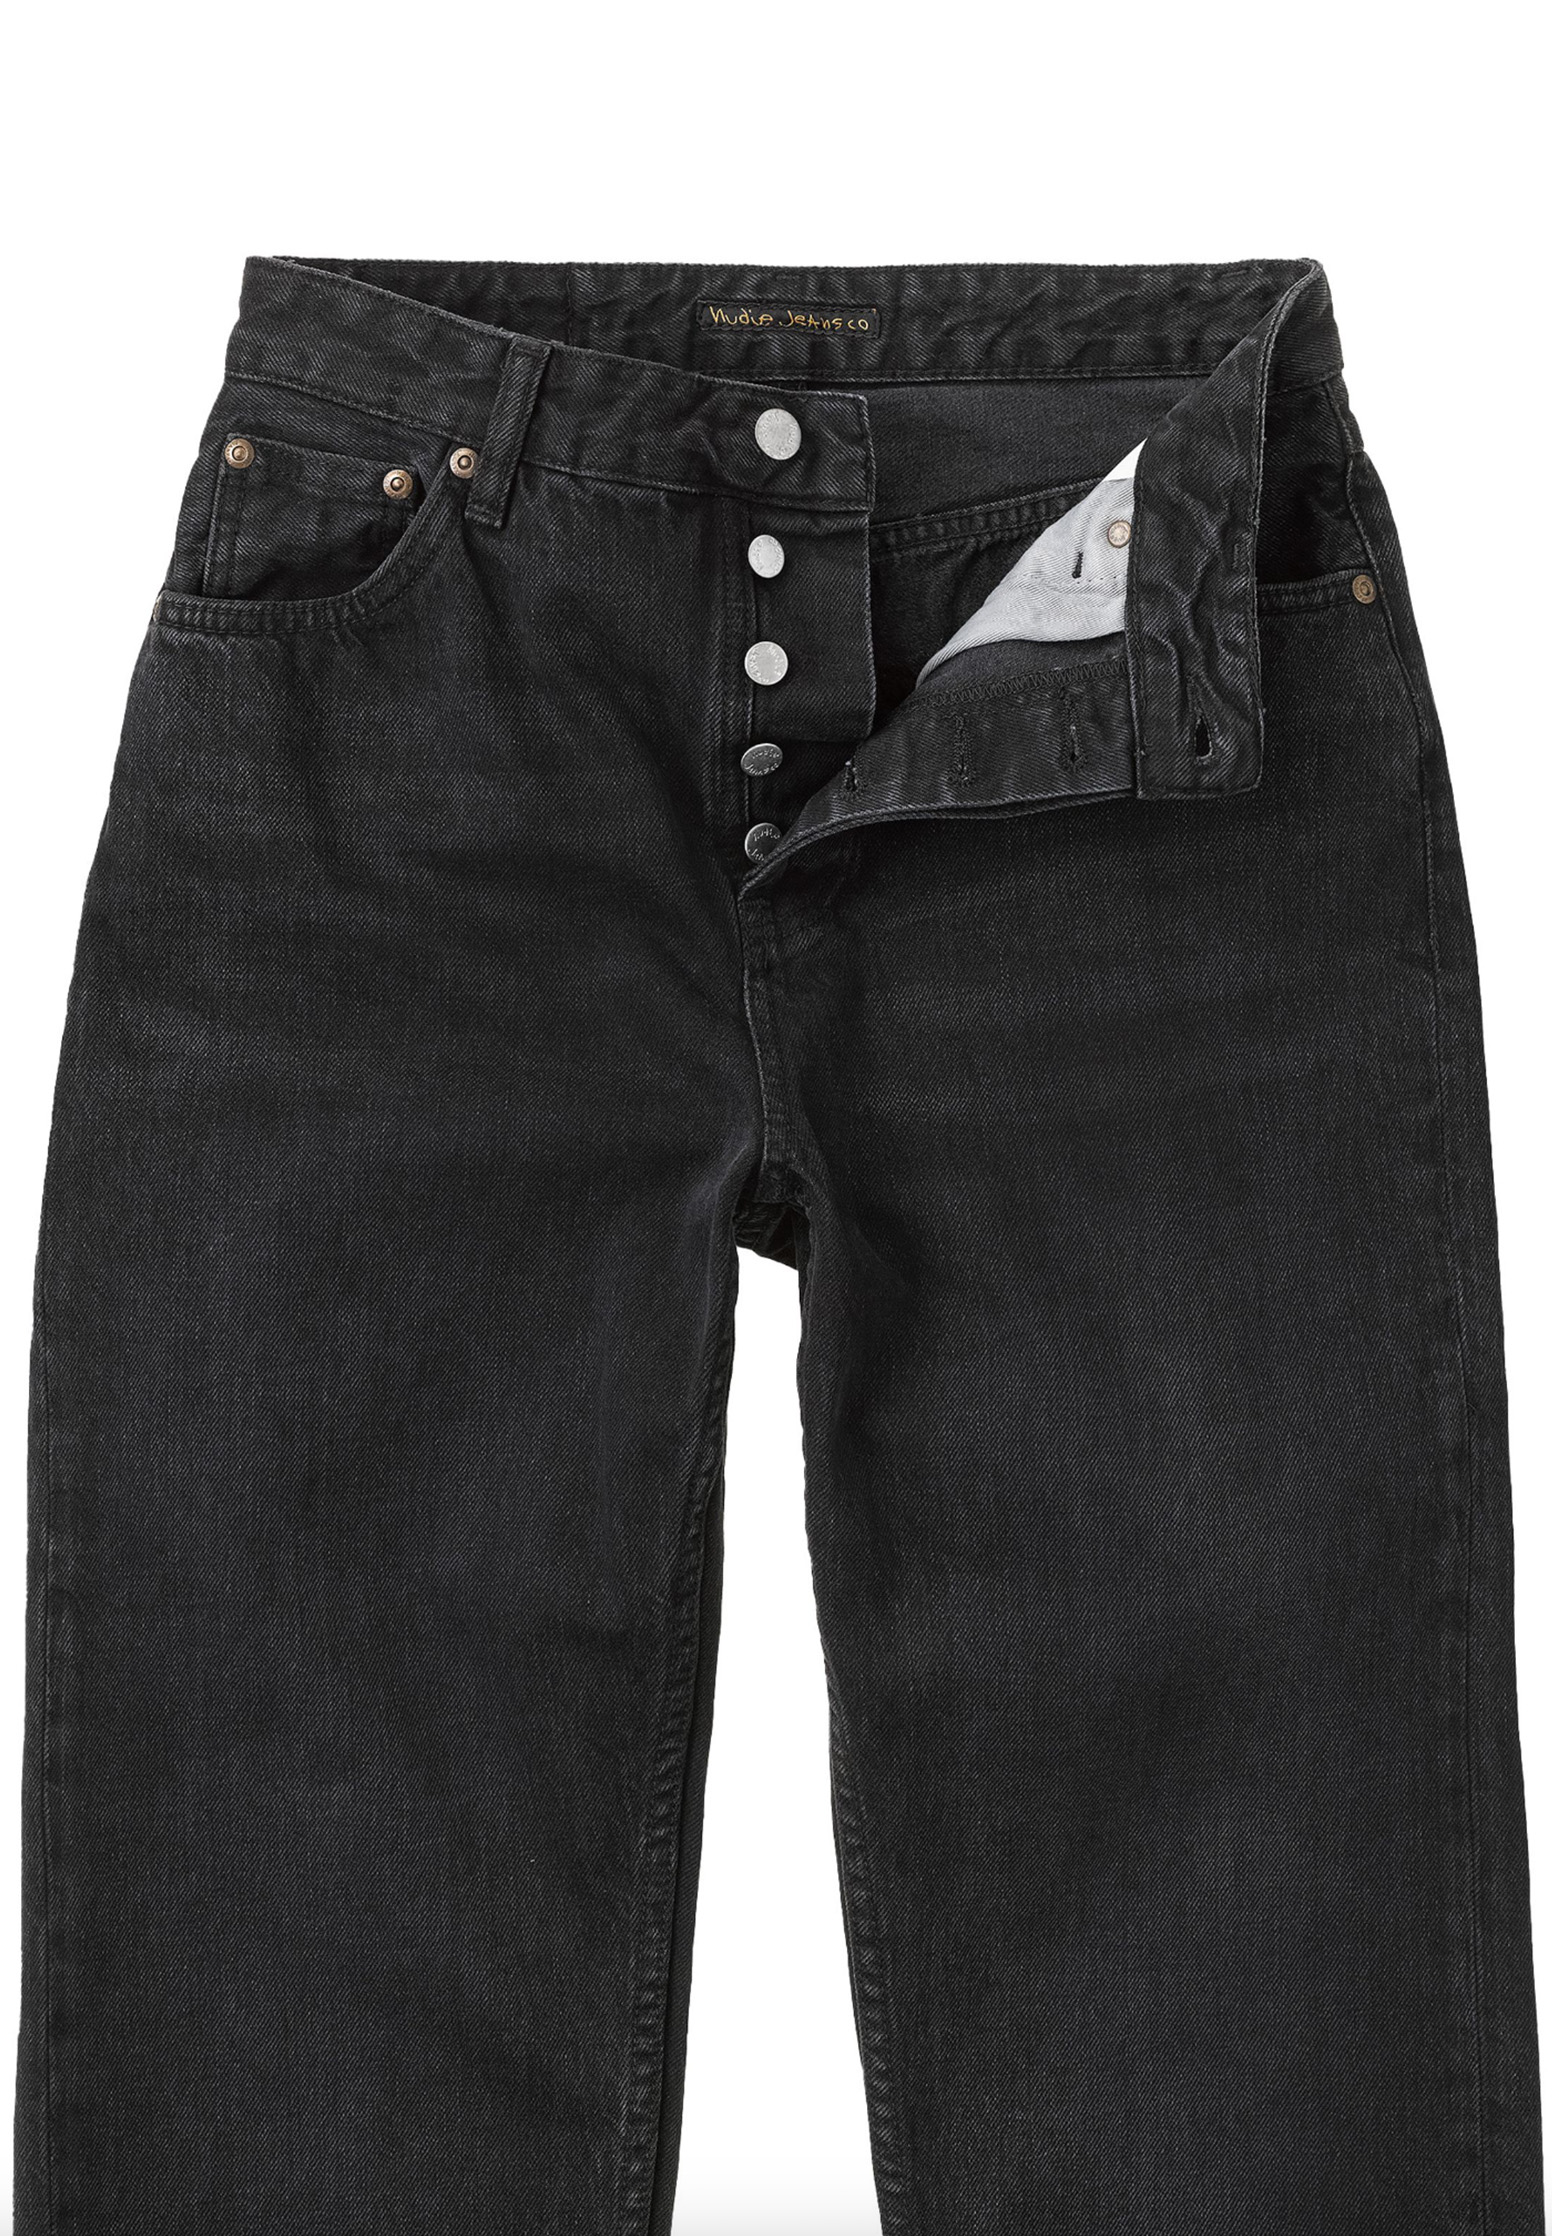 NUDIE JEANS Jeans Lofty Lo vintage black 30/30